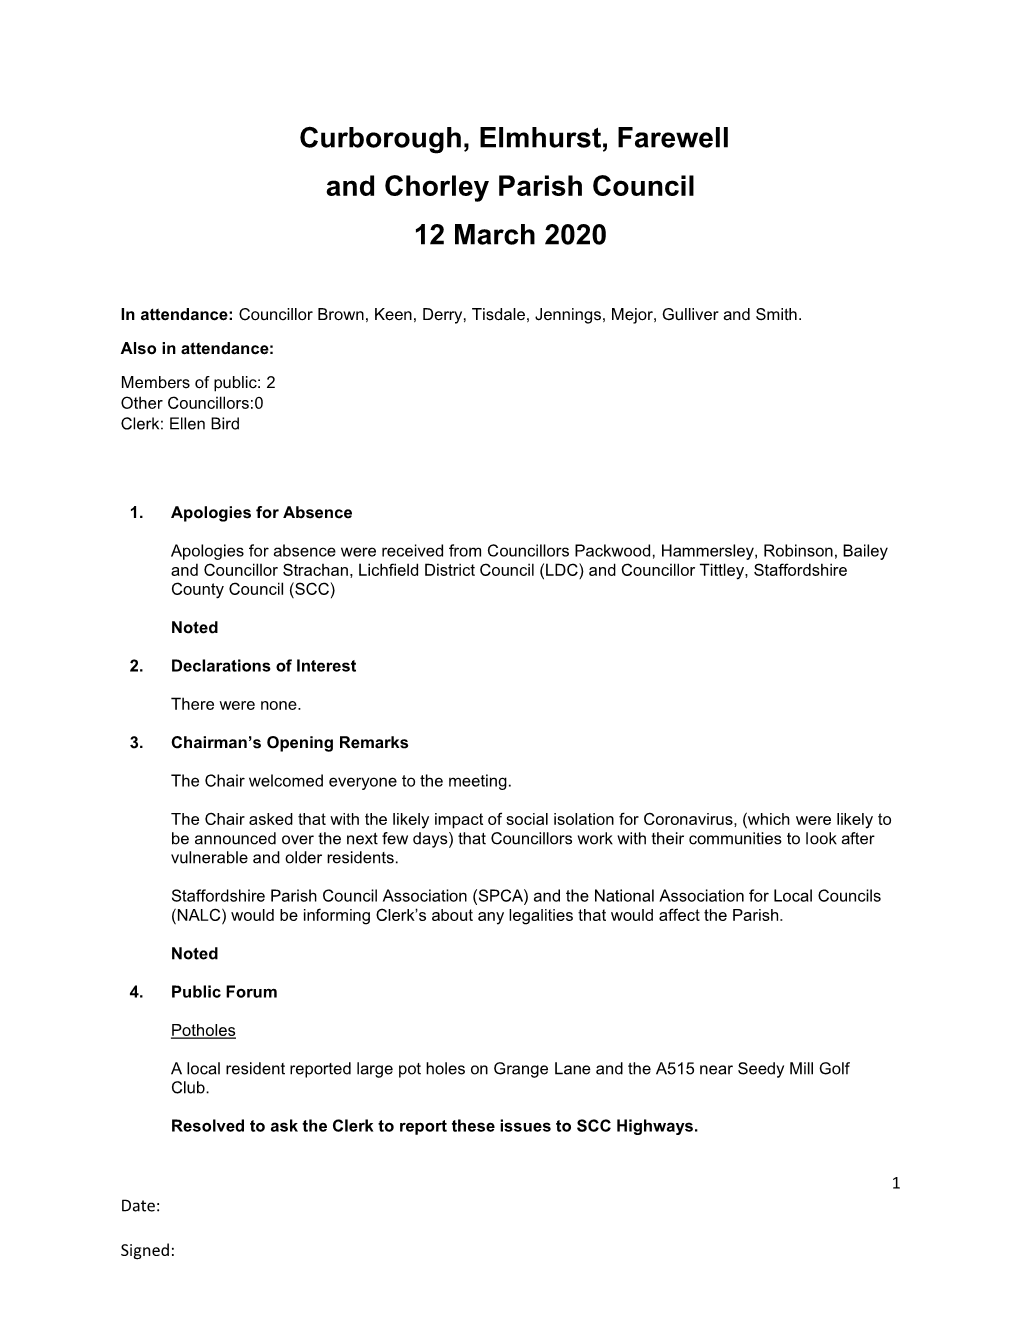 Curborough, Elmhurst, Farewell and Chorley Parish Council 12 March 2020